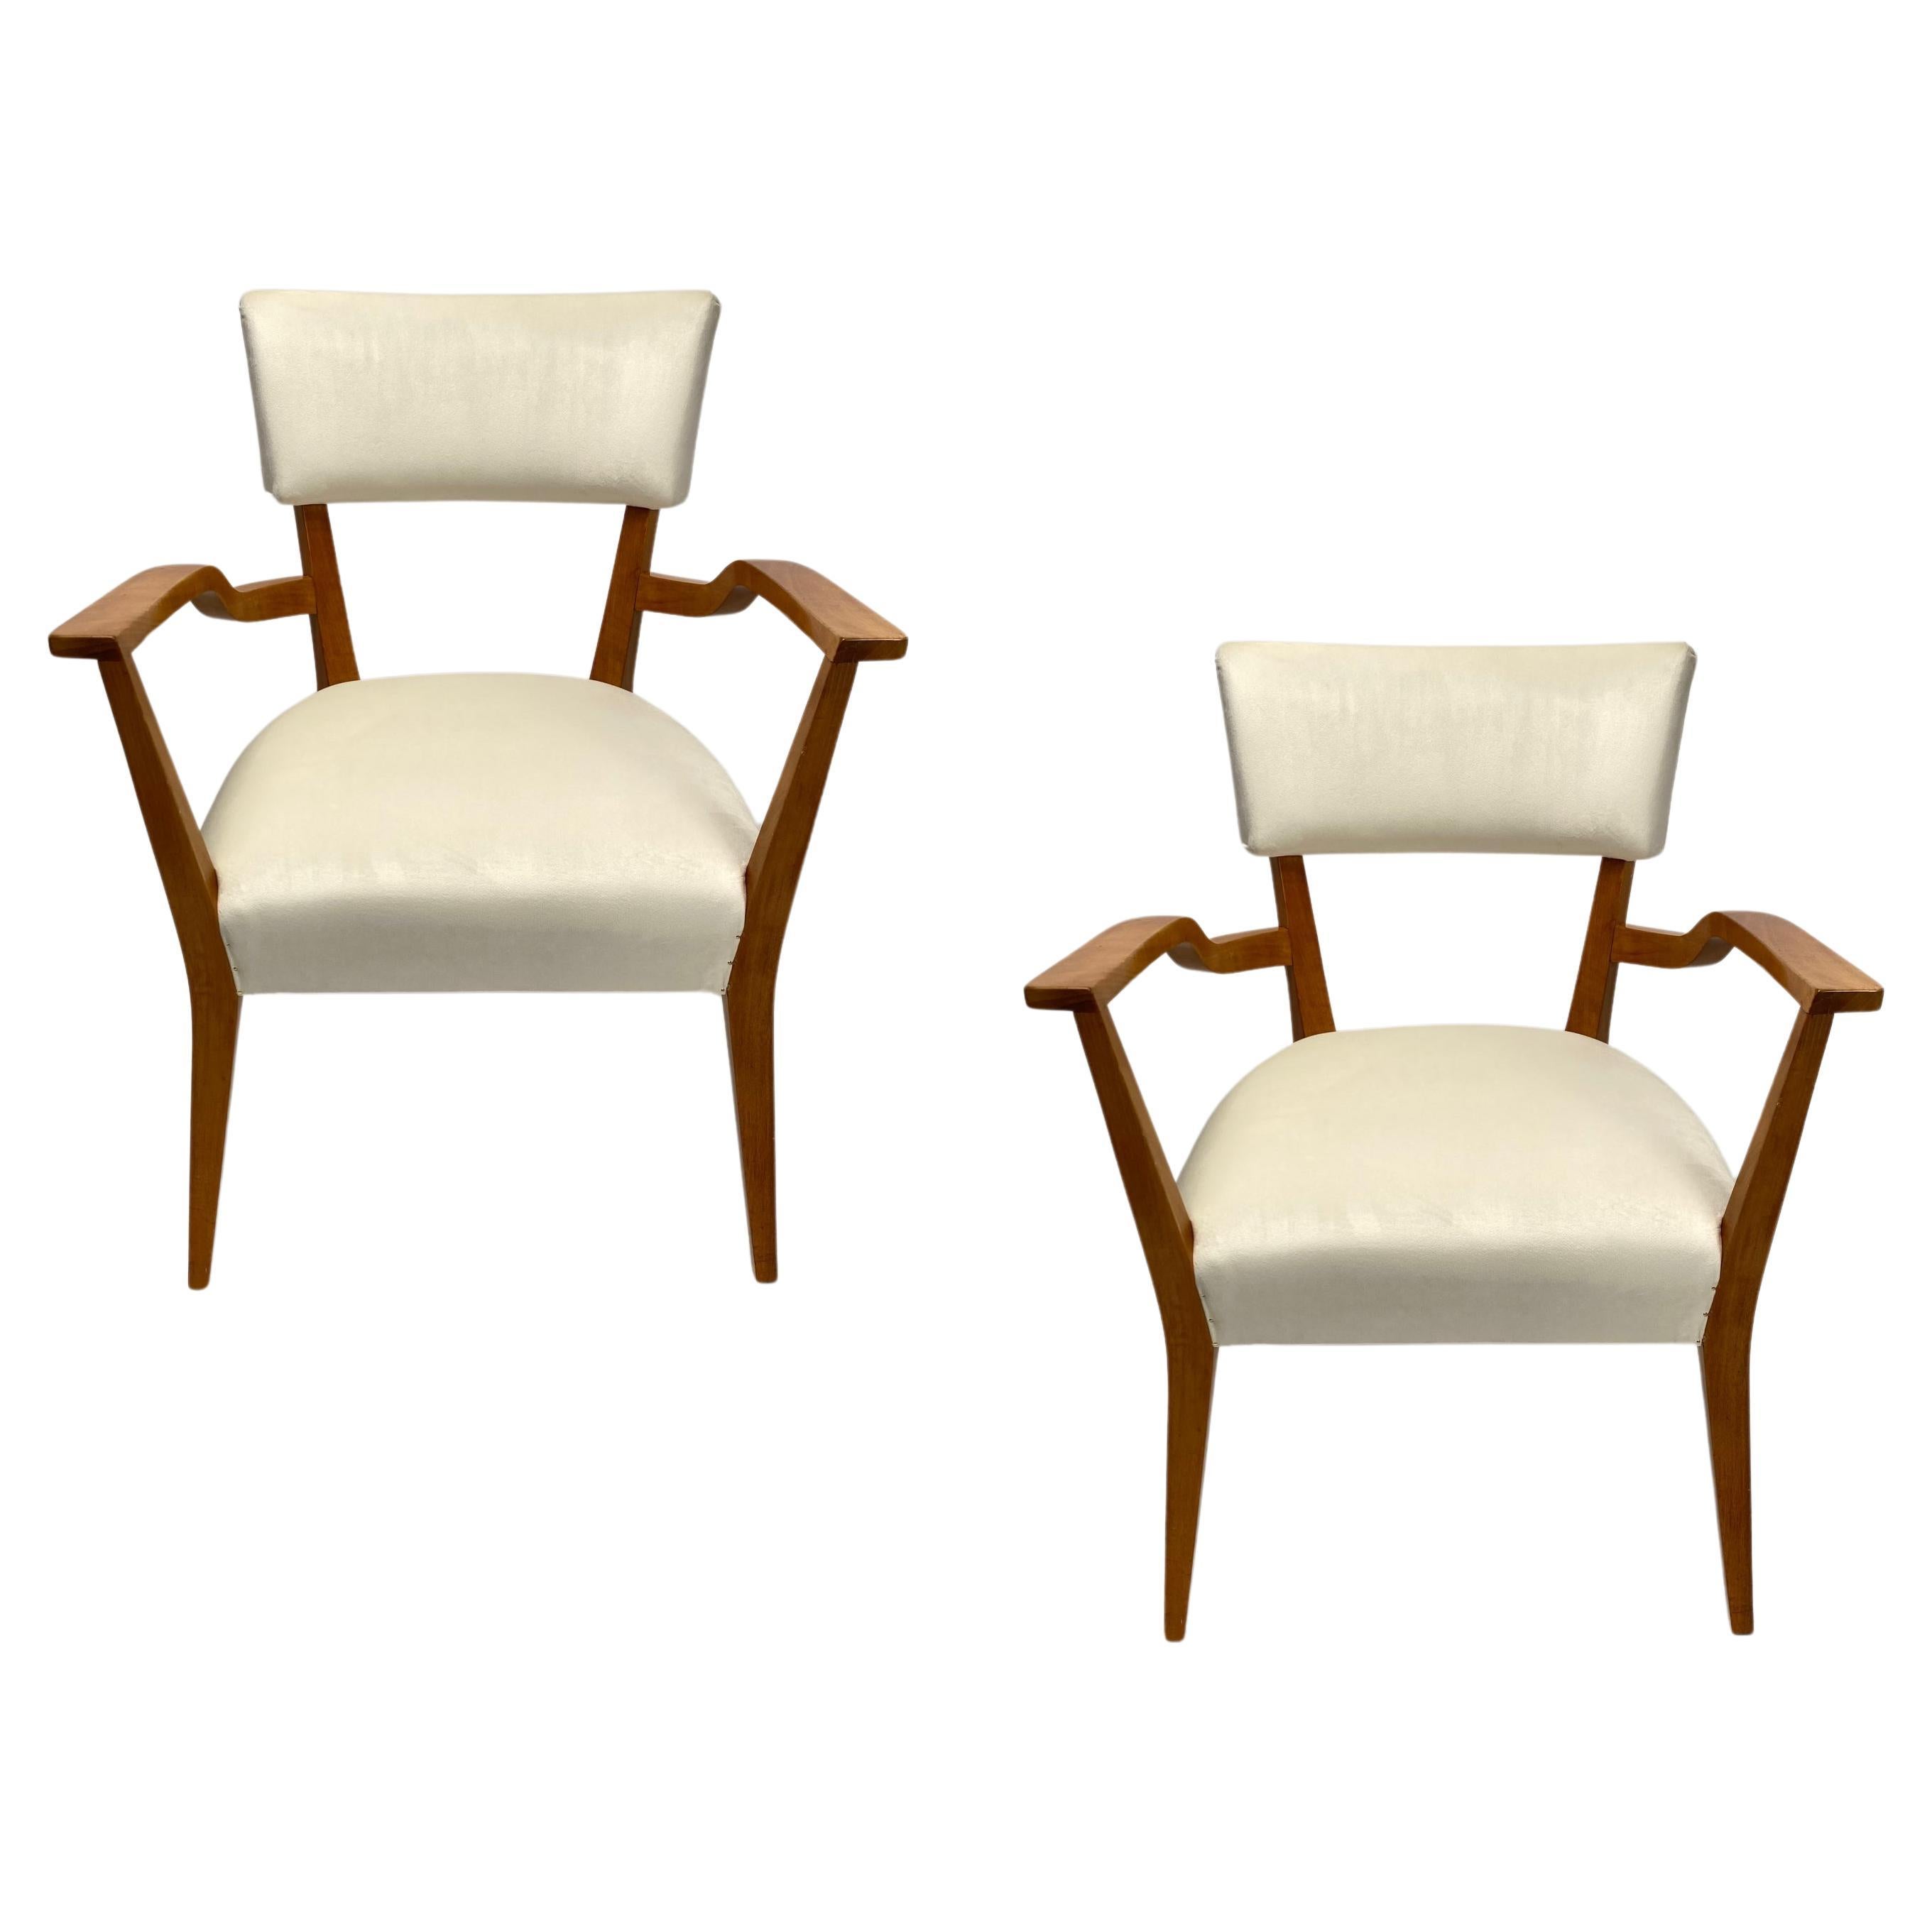 Paire de fauteuils organiques du milieu du siècle, style Gio Ponti, velours et bois, années 1950